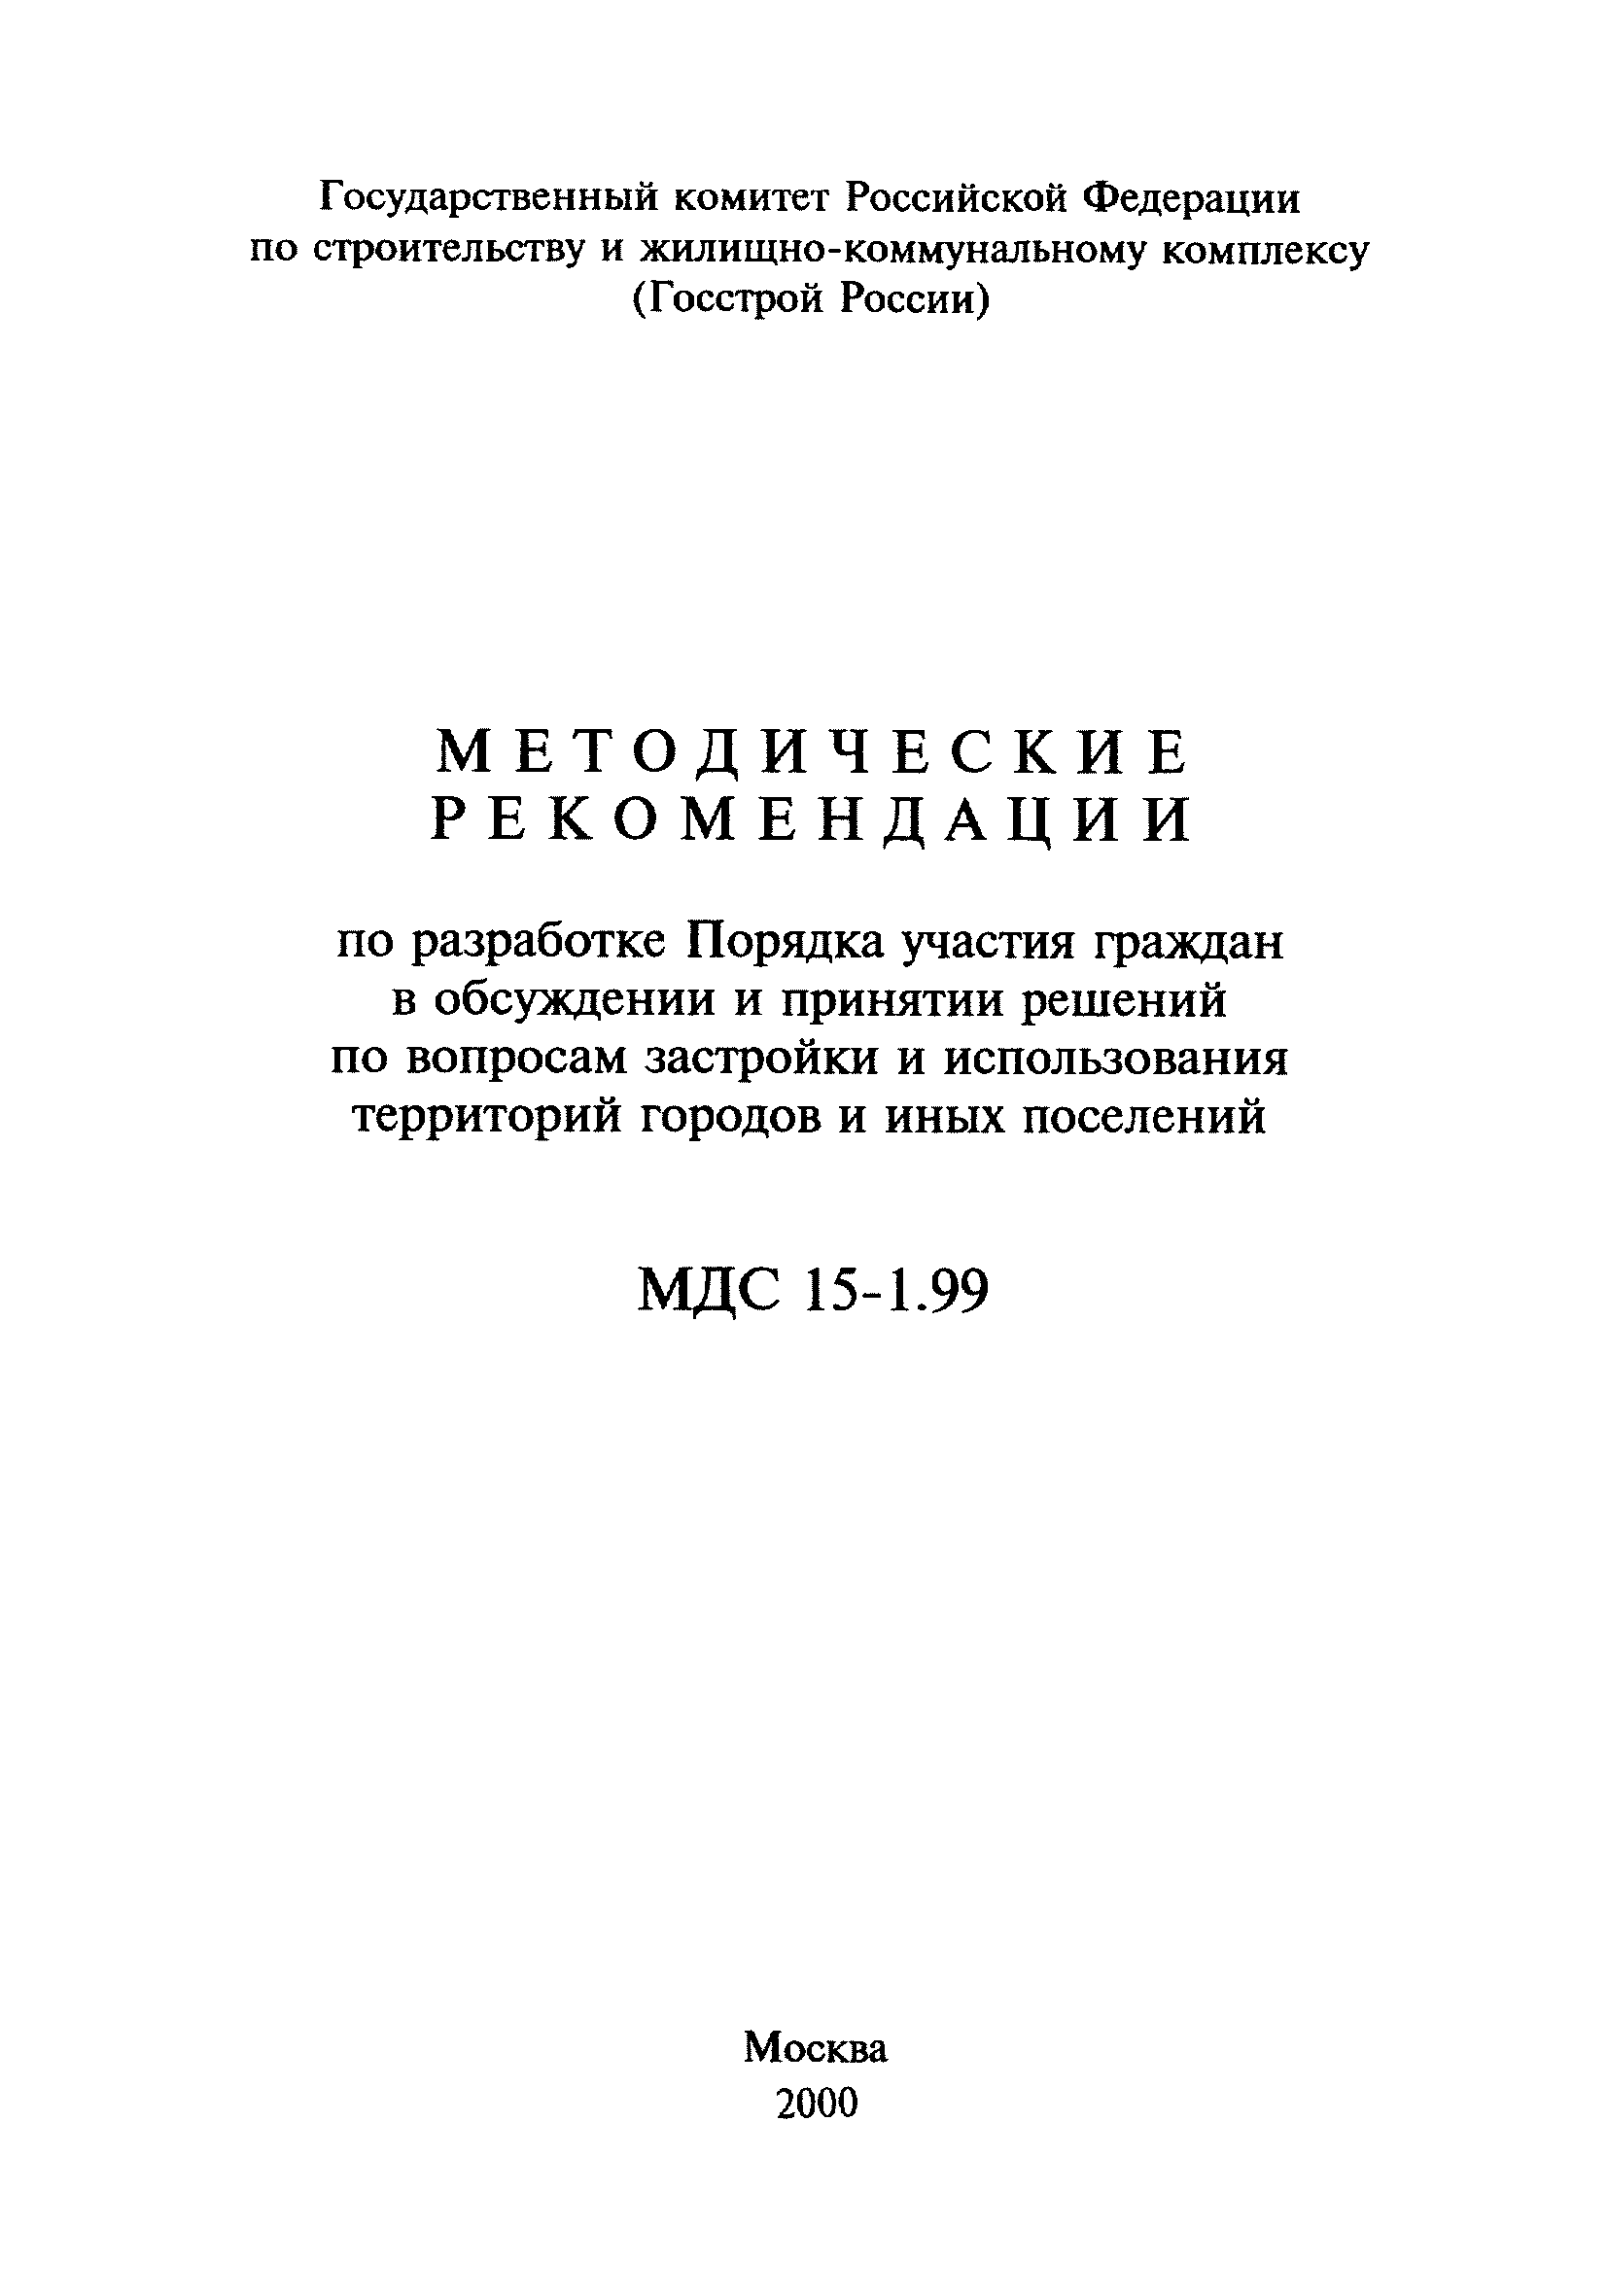 МДС 15-1.99